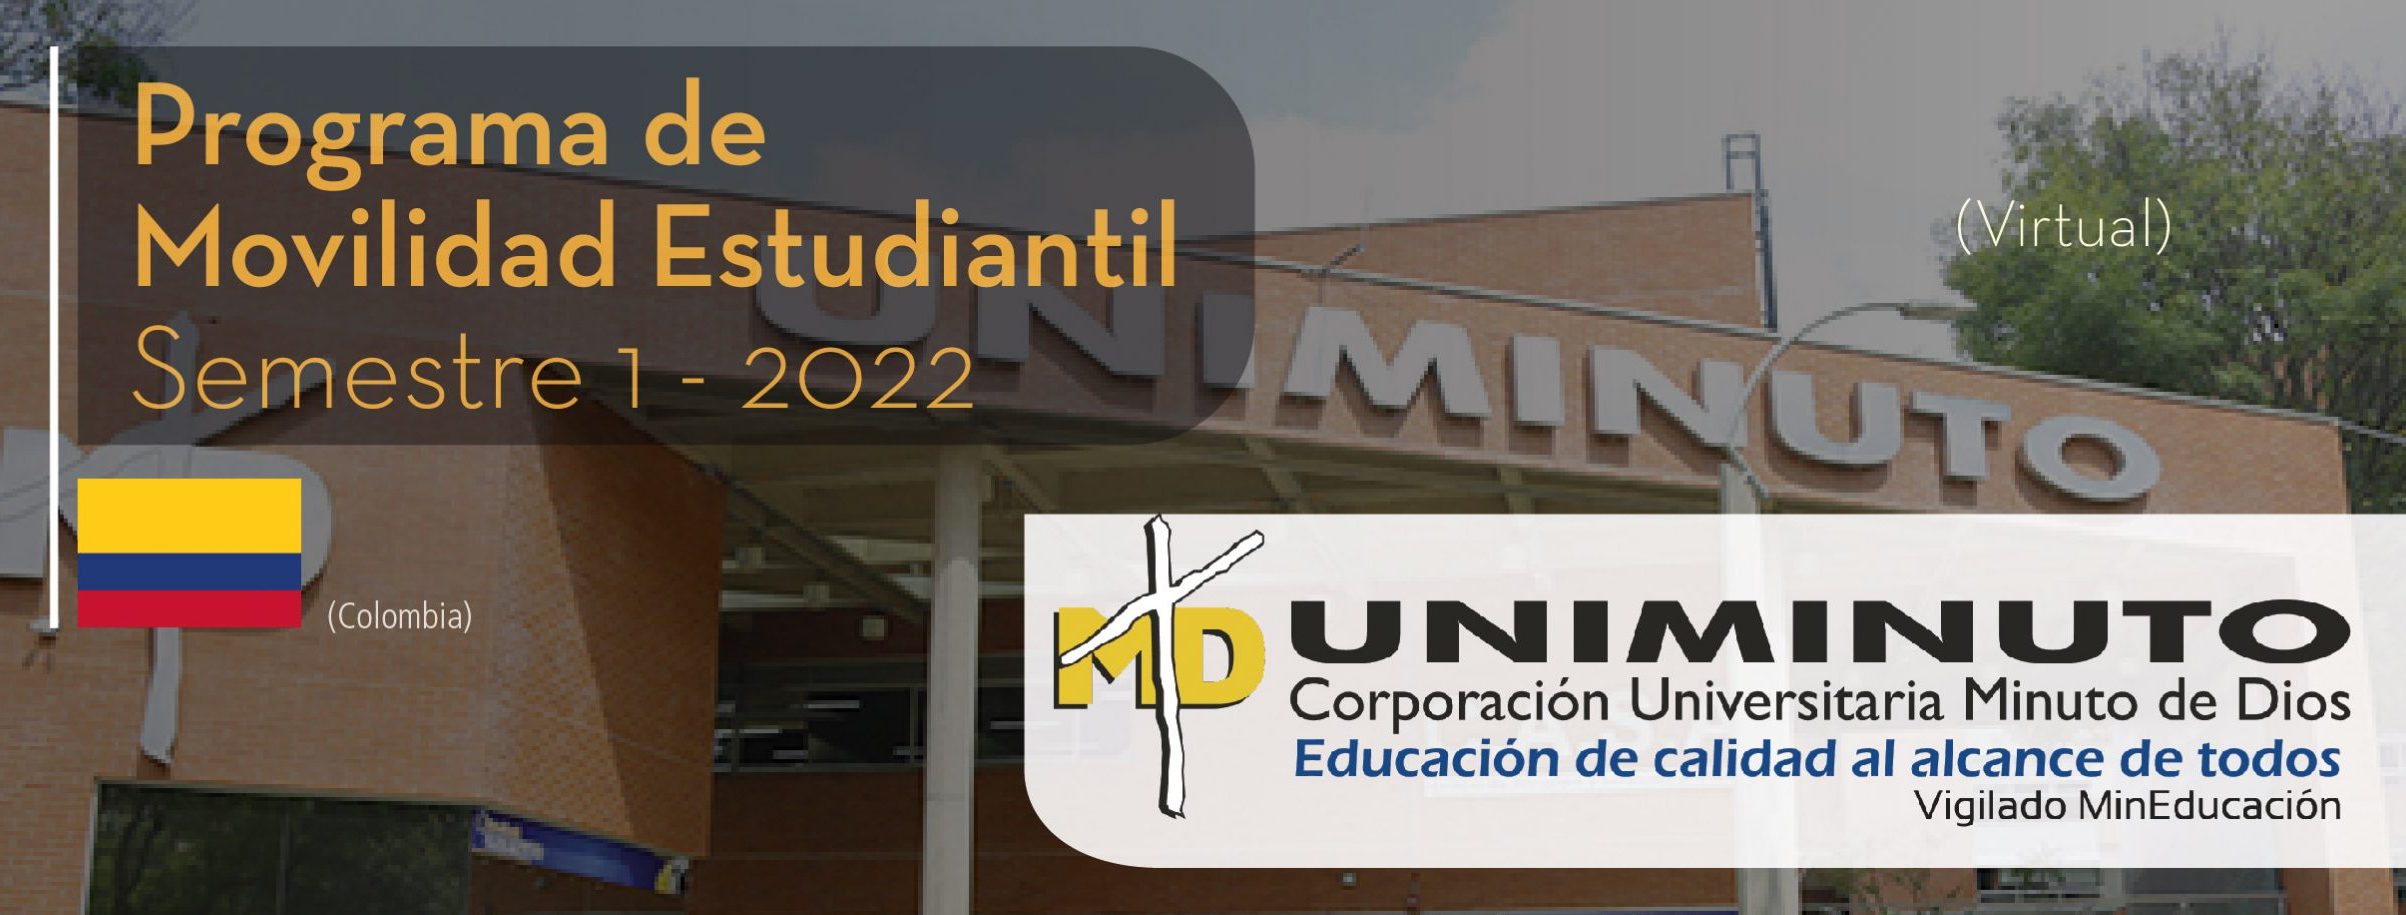 La Corporación Universitaria Minuto de Dios de Colombia es parte del Programa de Movilidad Virtual Estudiantil UCB por el Mundo.